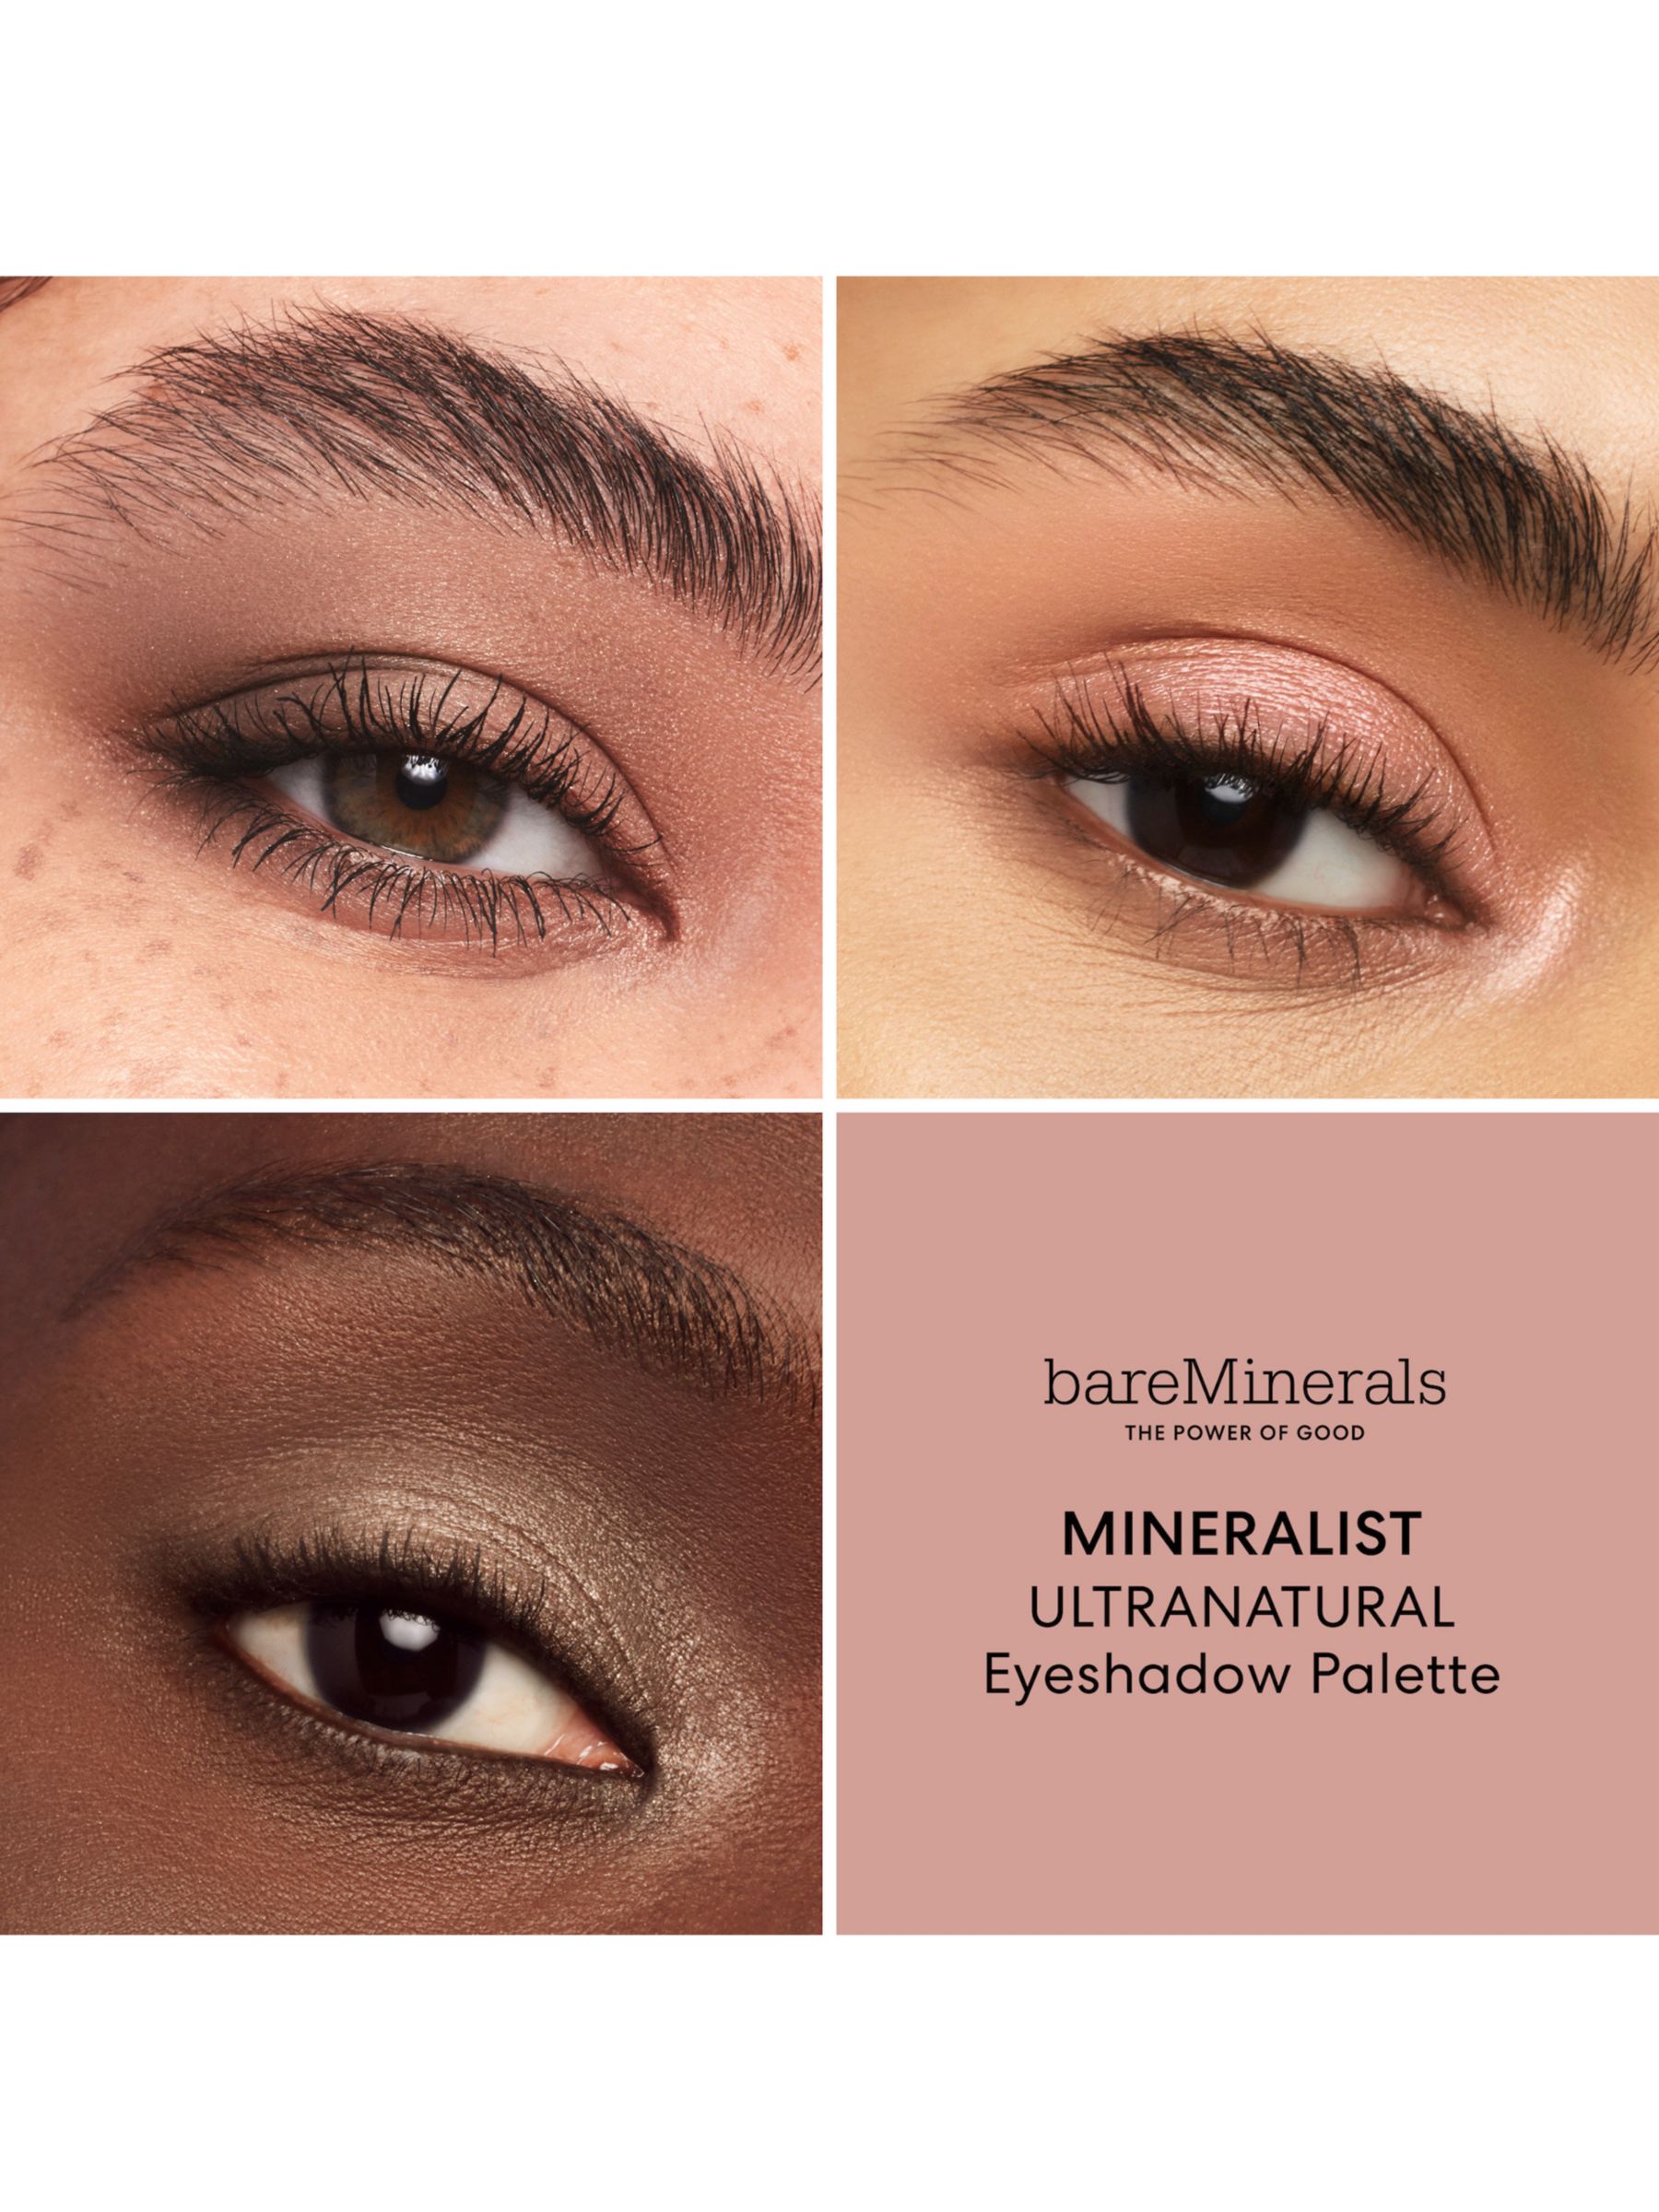 bareMinerals Mineralist Eyeshadow Palette, Ultranatural